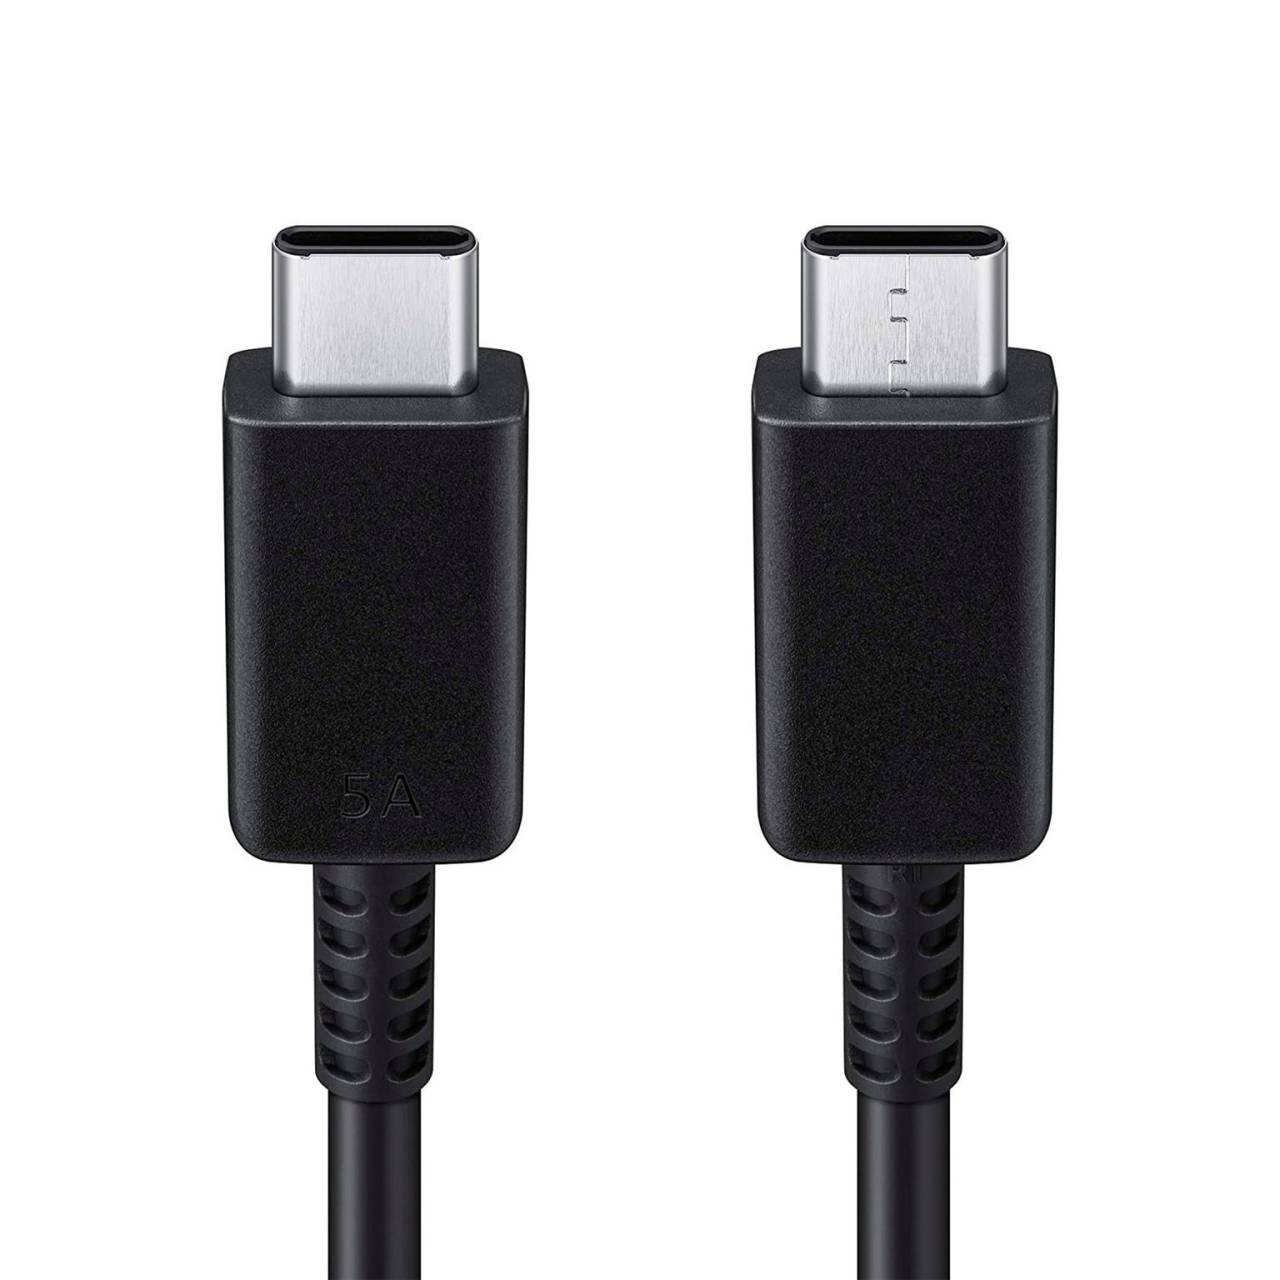 Samsung Ladekabel – USB-C auf USB-C für Smartphones und andere Geräte, Schnellladekabel, Länge 1,0 m